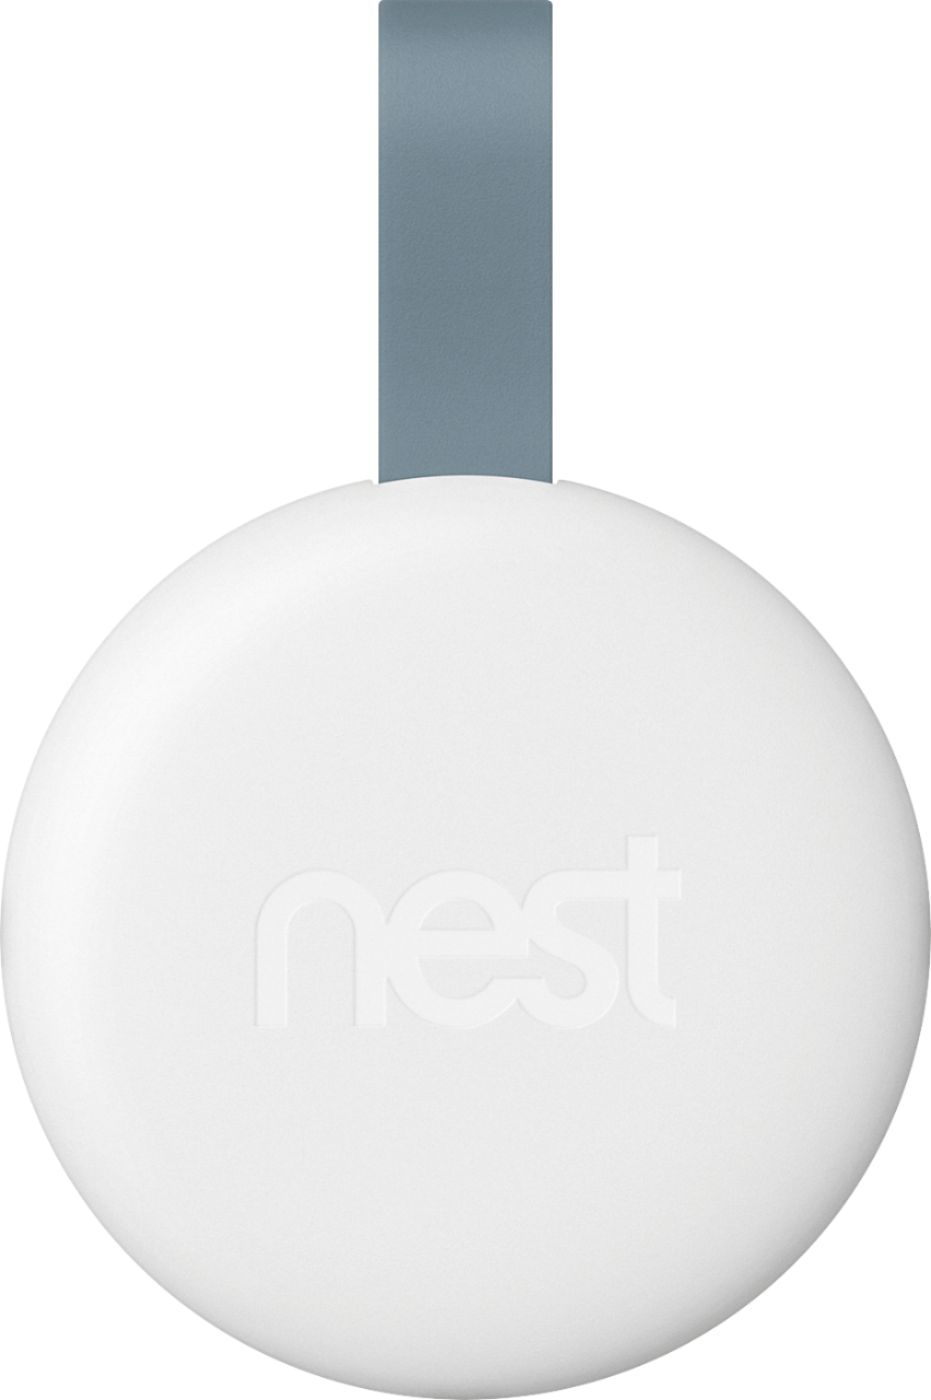 best buy nest security